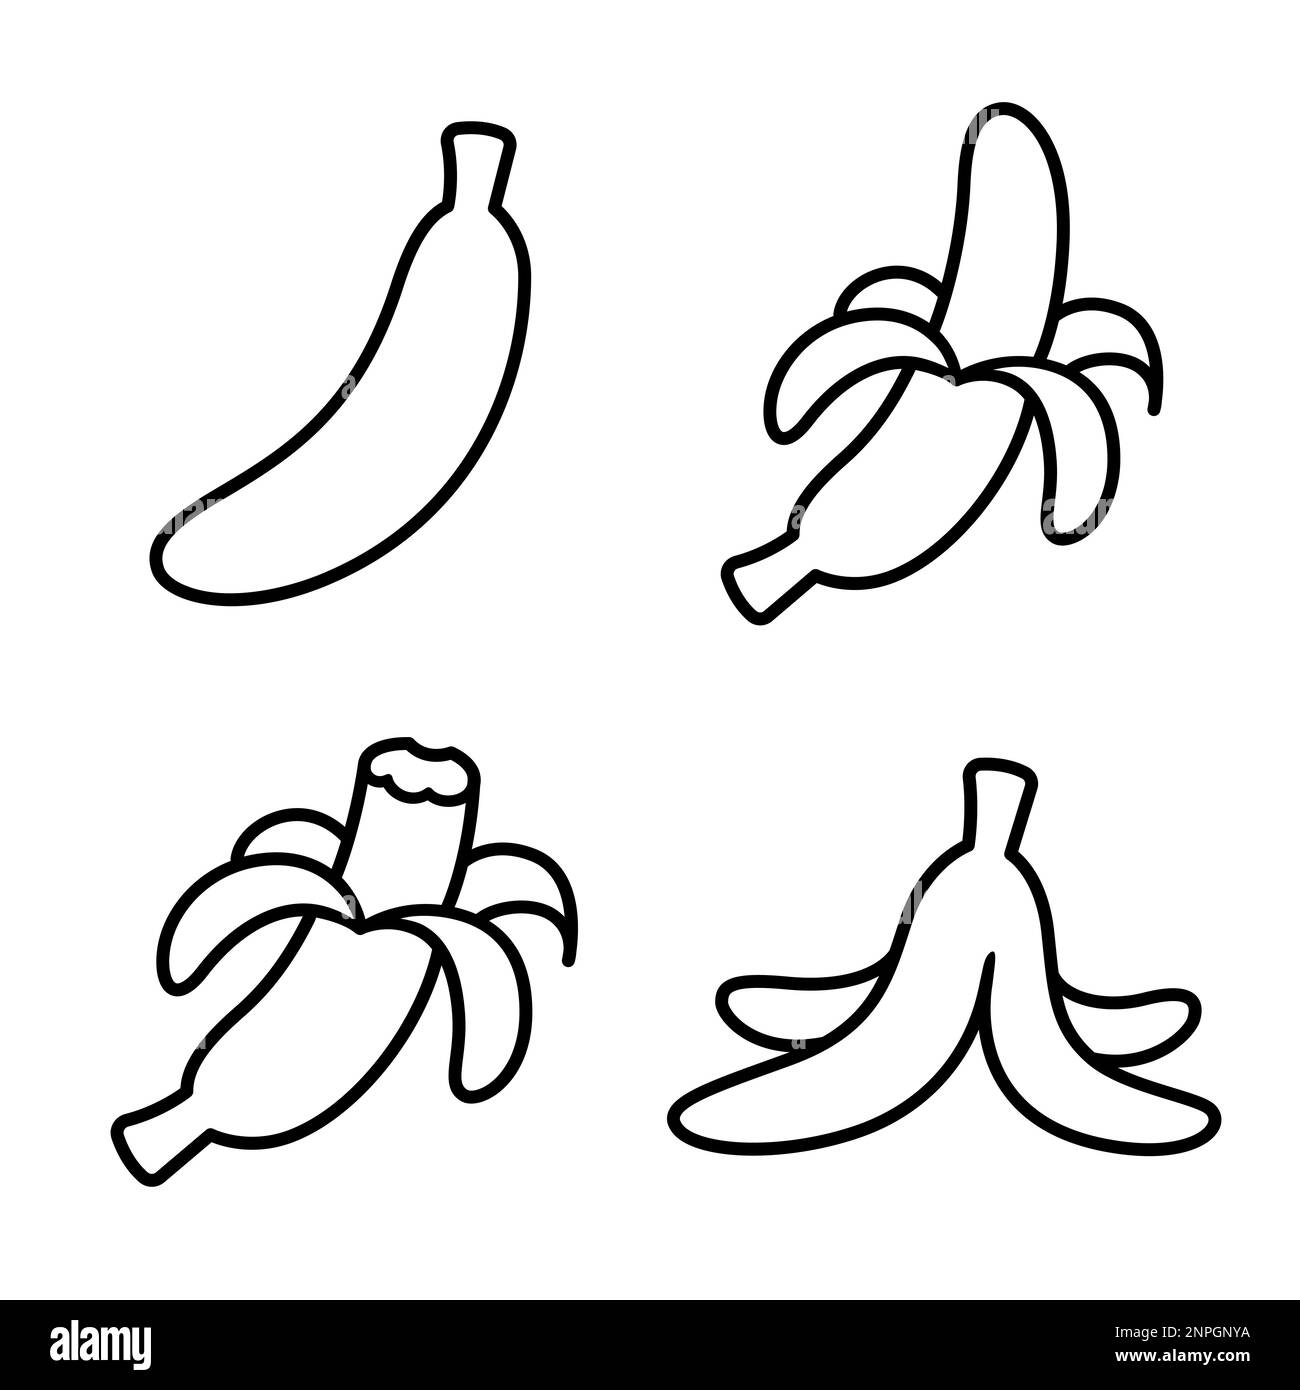 Les icônes de la ligne noire et blanche de la banane Doodle sont : entières, pelées, mordues et pelées vides. Dessin simple, illustration de clip art vectoriel. Illustration de Vecteur